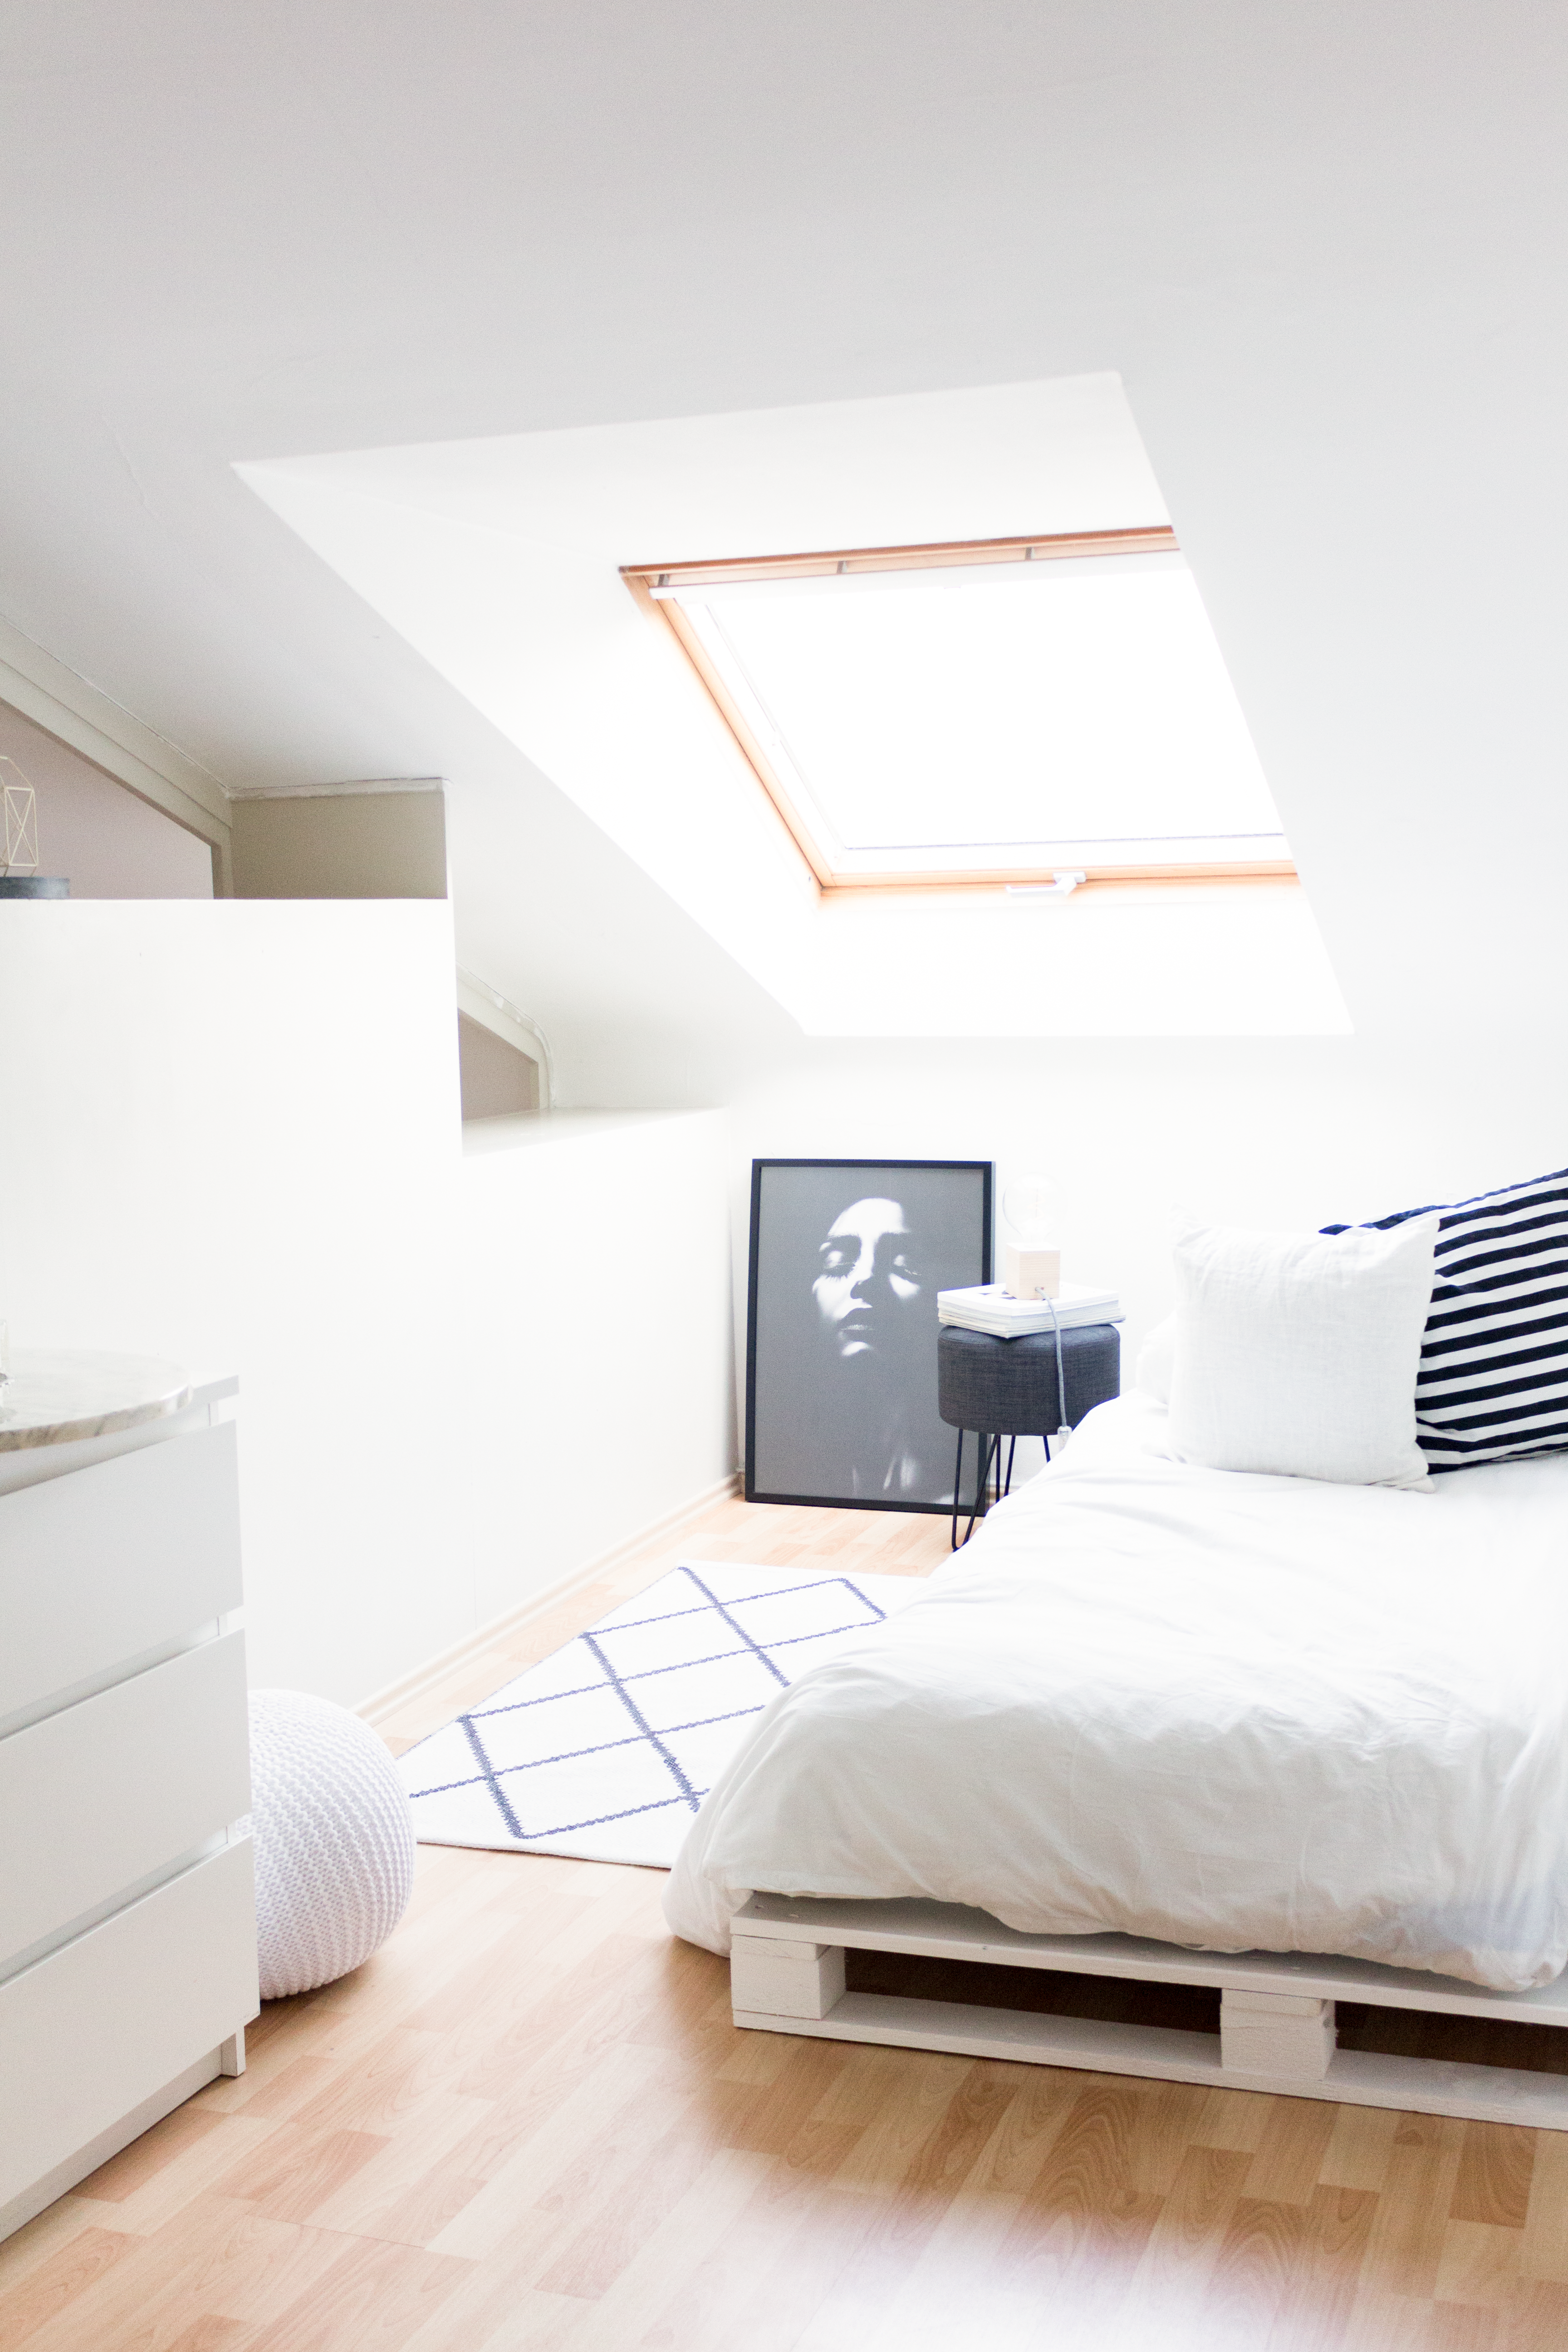 Anleitung für ein Bett aus weißen Europaletten. Eine einfache, schnelle und günstiges Do it yourself-Idee mit tollem Ergebnis!